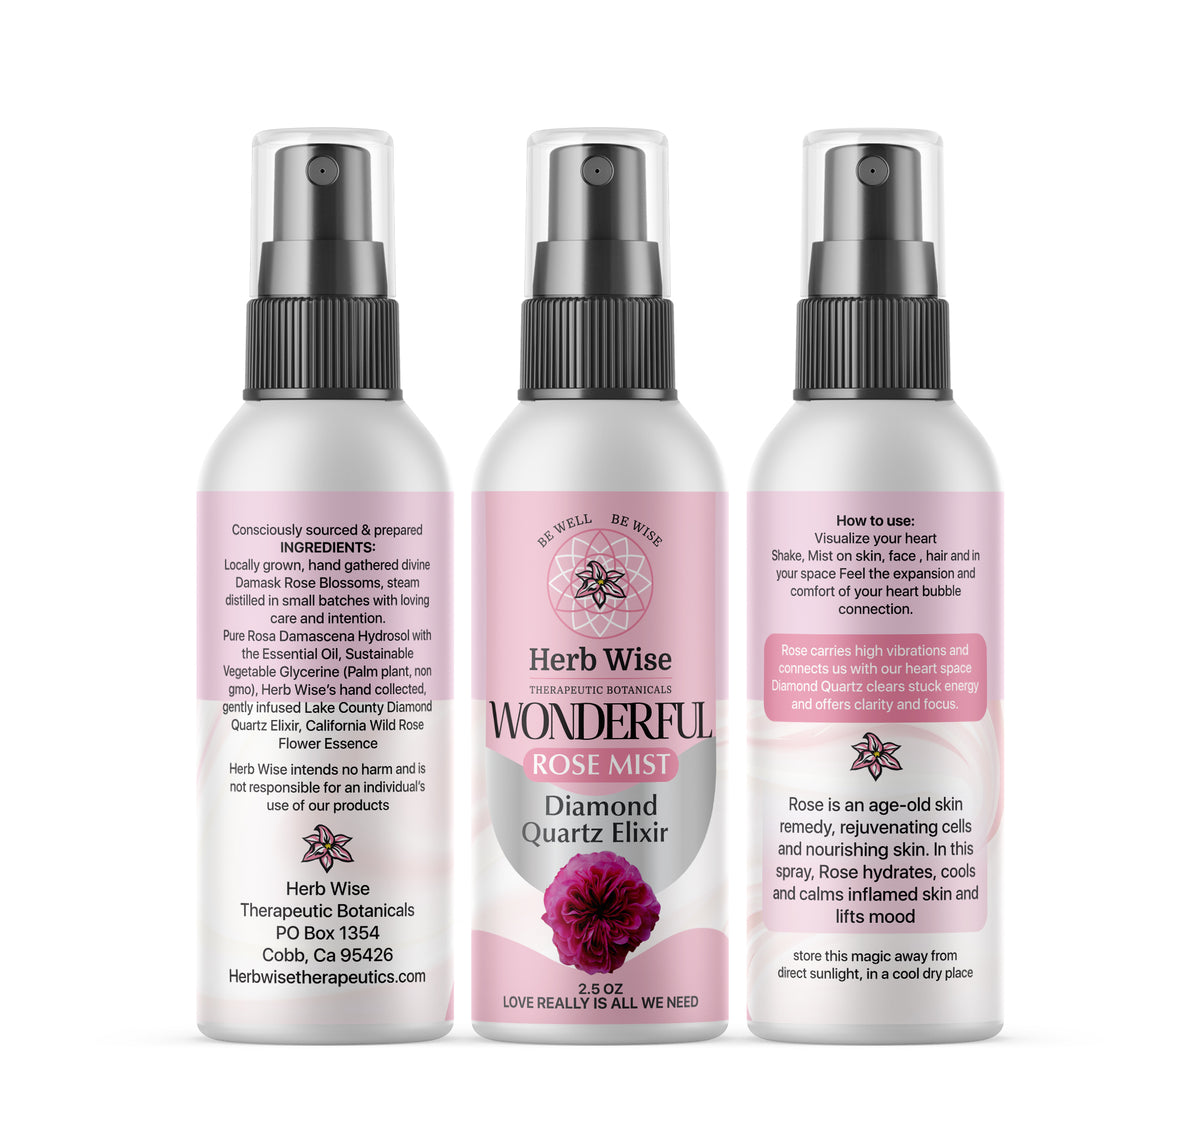 Wonderful Rose Mist Refresh your skin & space – Herb Wise Botanicals